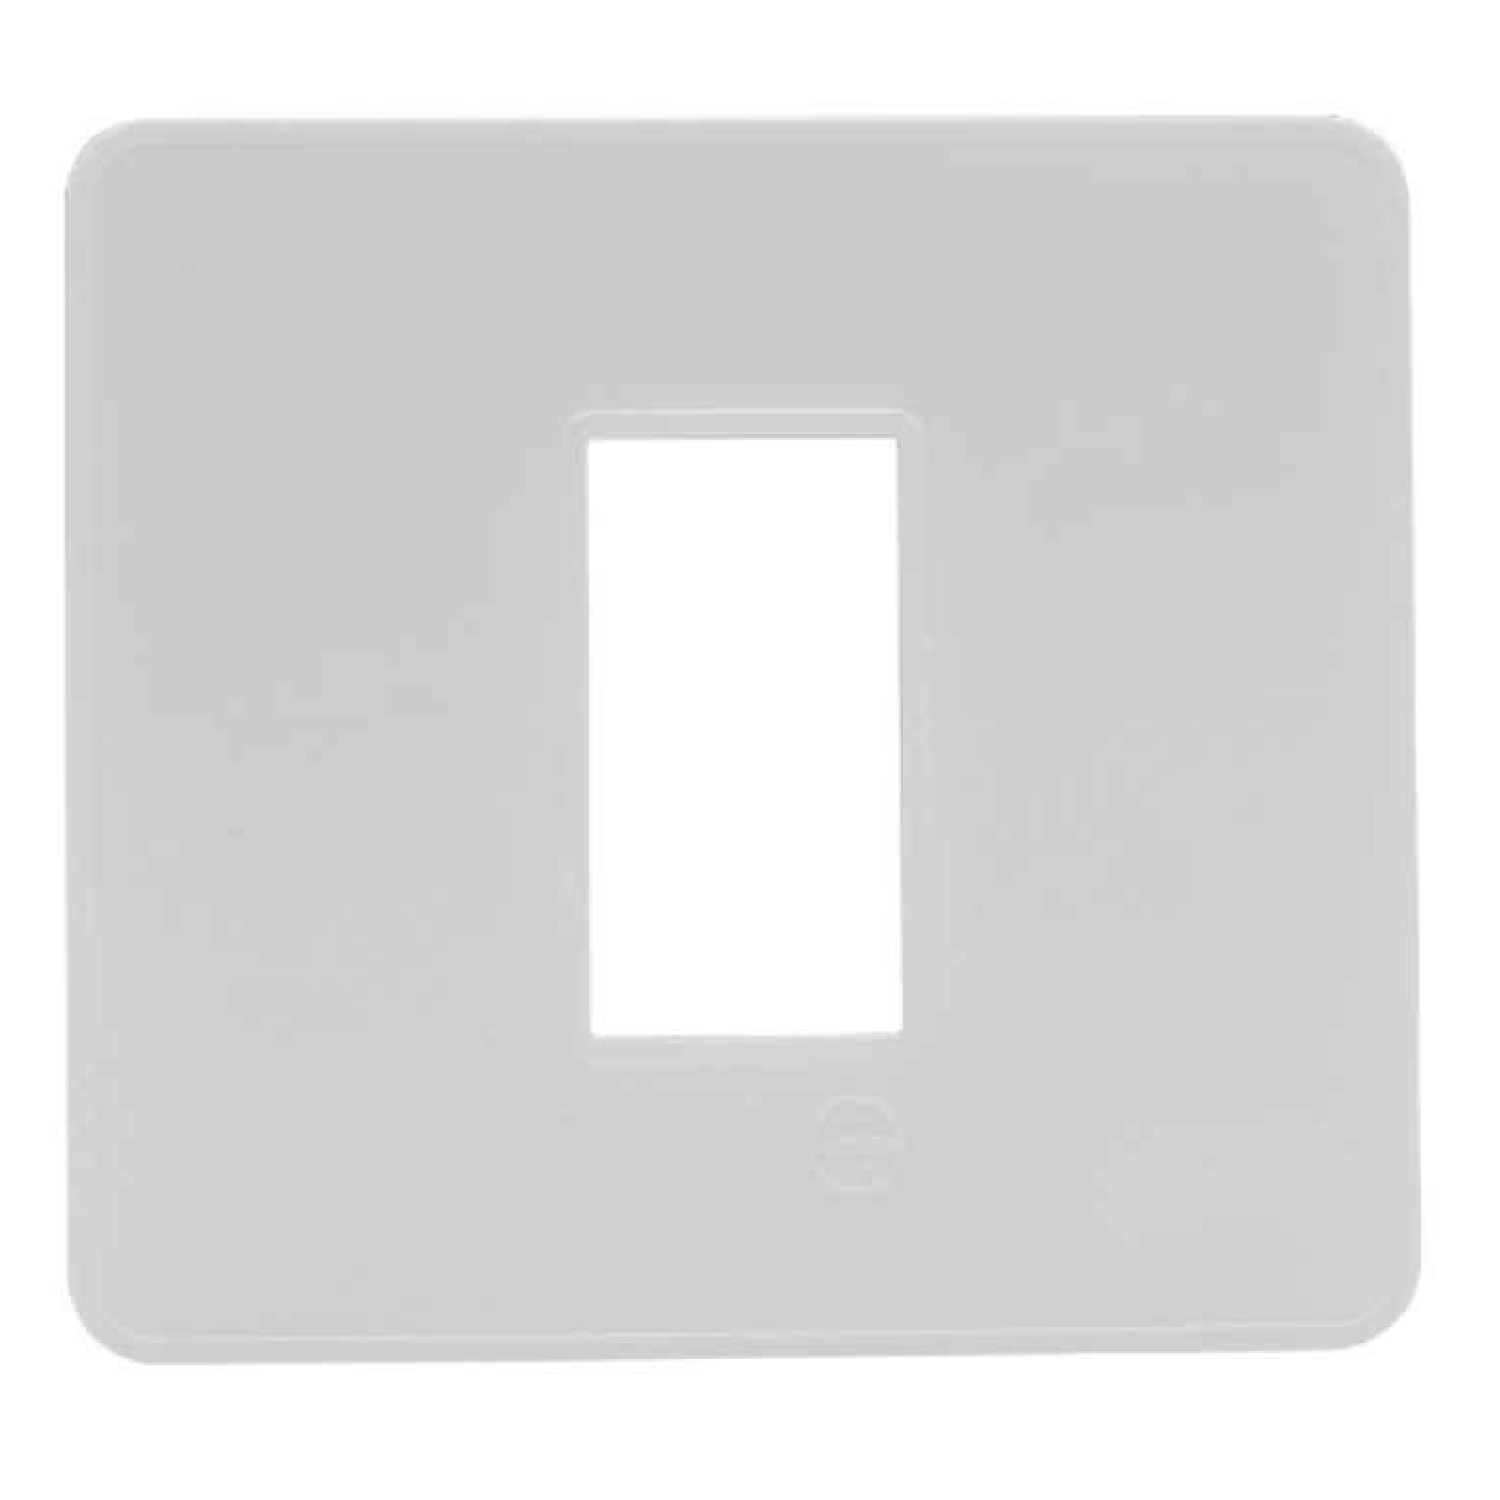  LT Engem  1 Module (Regular) Cover Plate with Base Frame- White